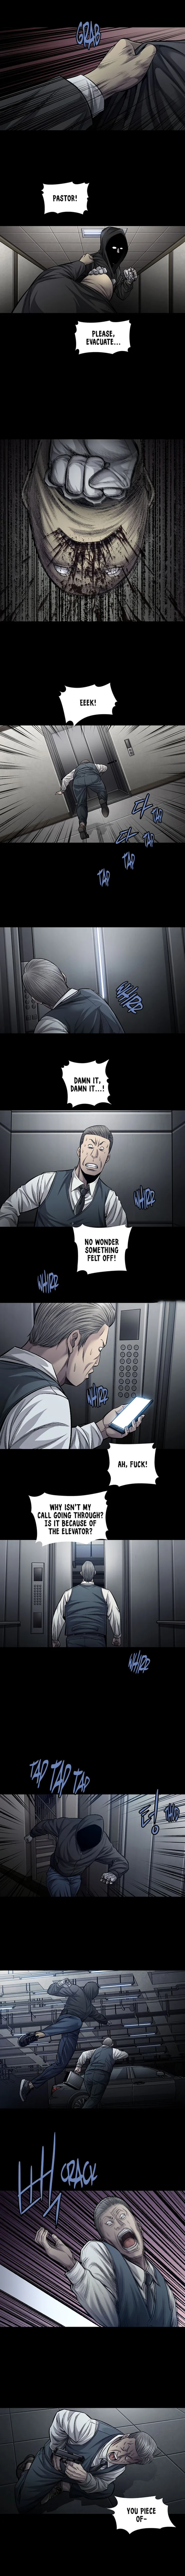 Vigilante - Chapter 84 Page 5